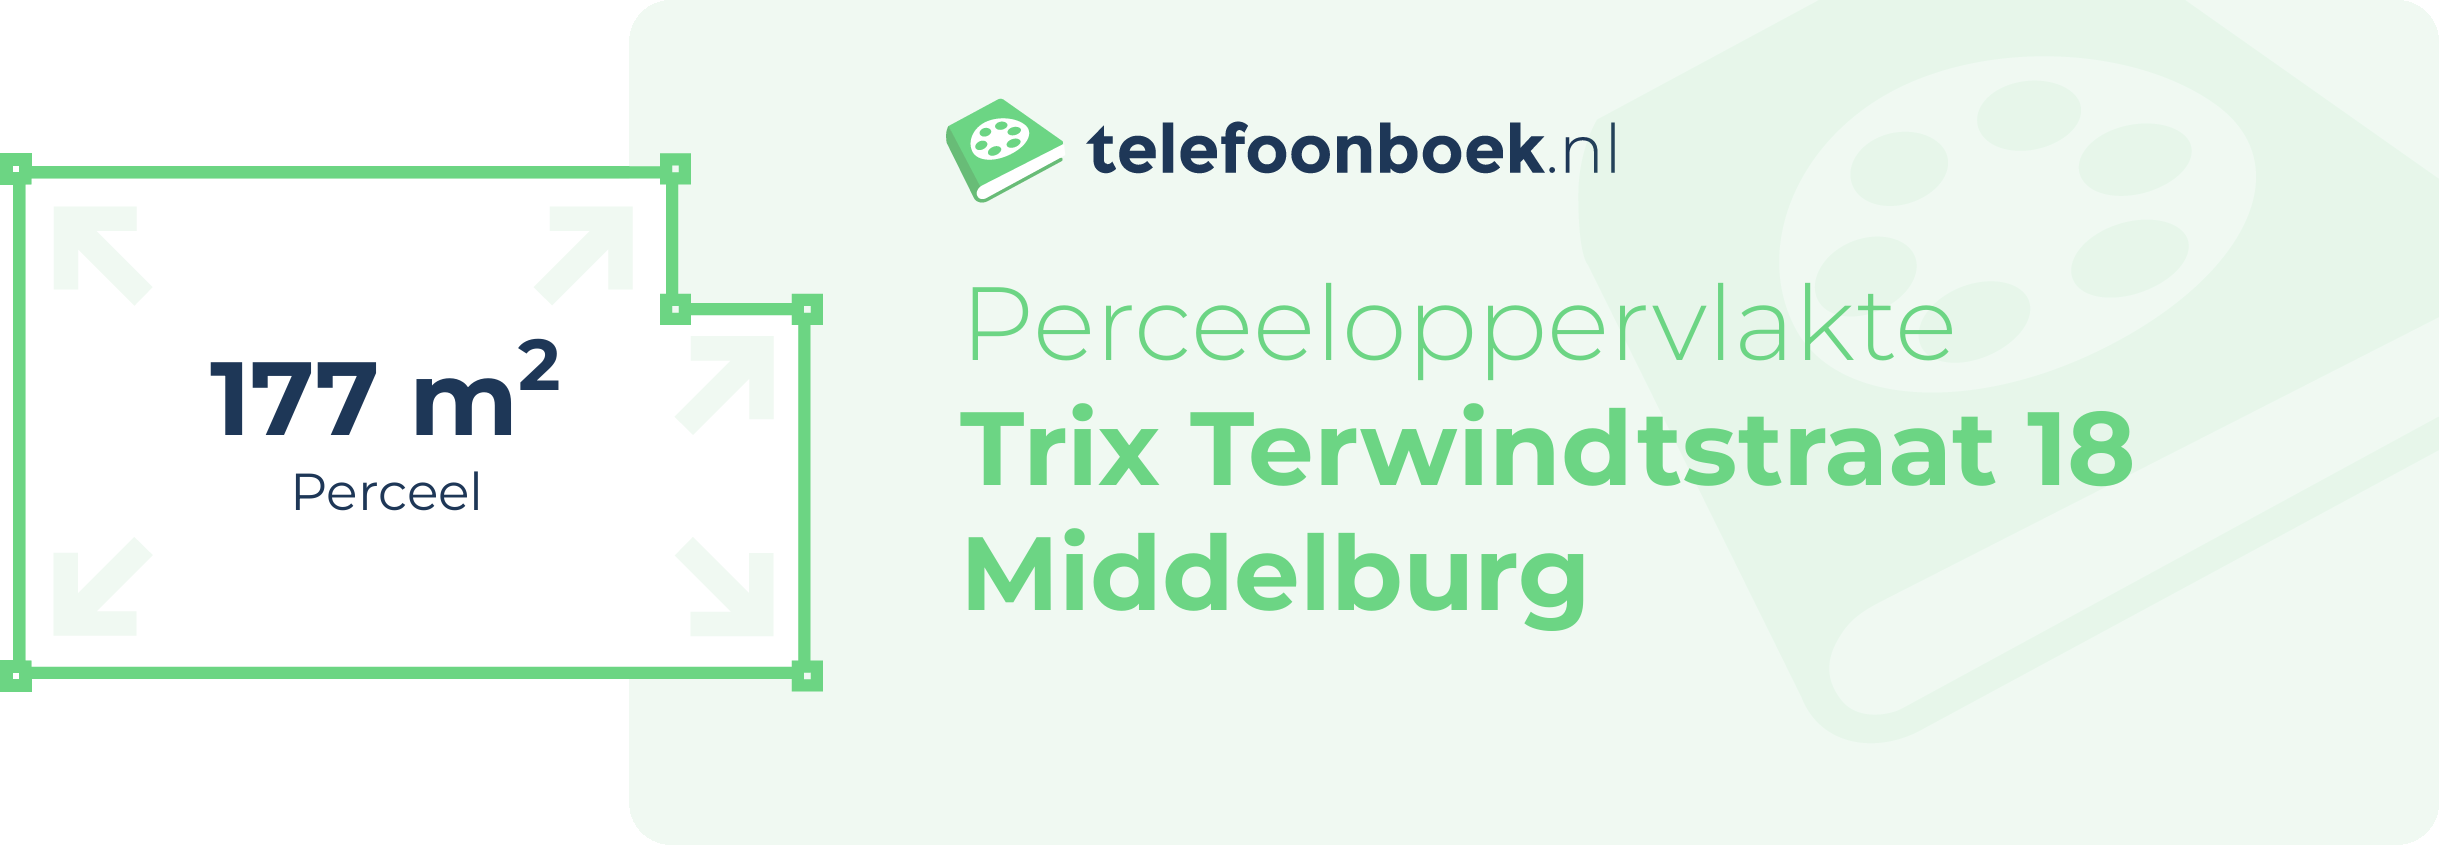 Perceeloppervlakte Trix Terwindtstraat 18 Middelburg